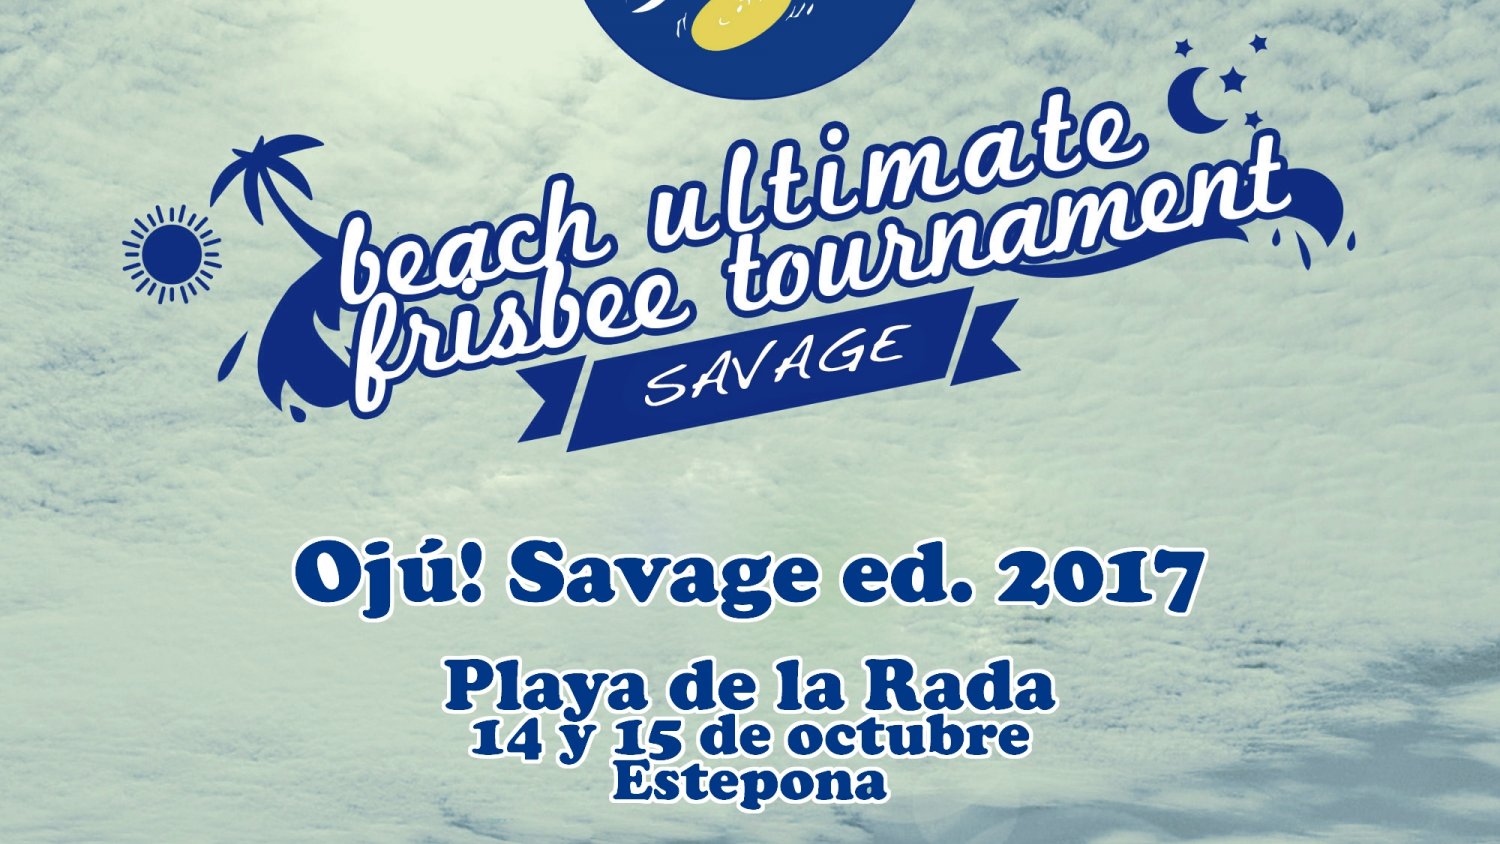 Más de 70 jugadores participarán en el Campeonato “OJÚ! Savage ed. 2017” de Ultimate Frisbee en Estepona